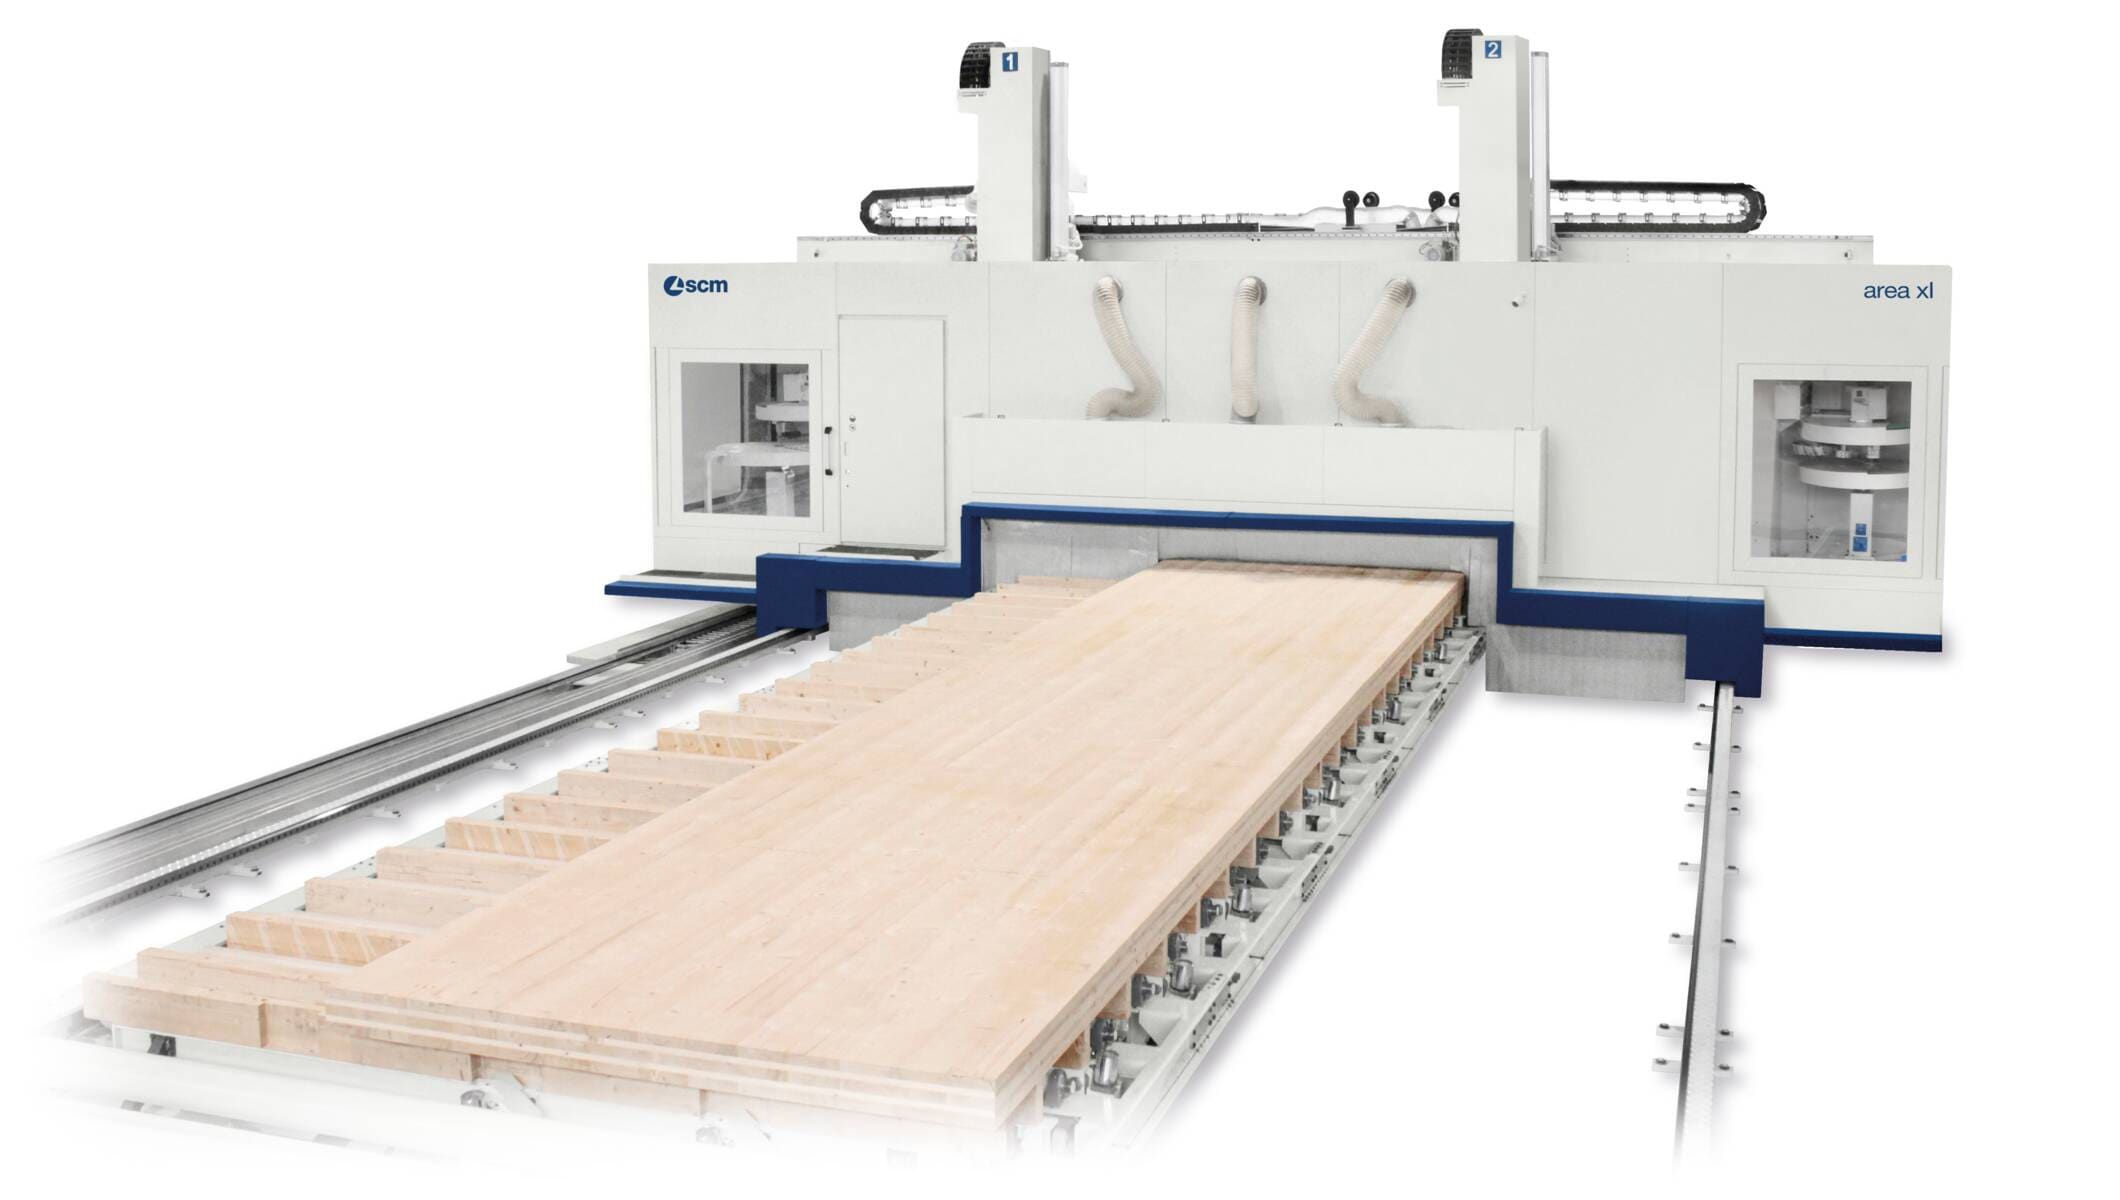 Systeme für den Holzbau - CNC-Abbundanlagen für den Holzbau - area xl